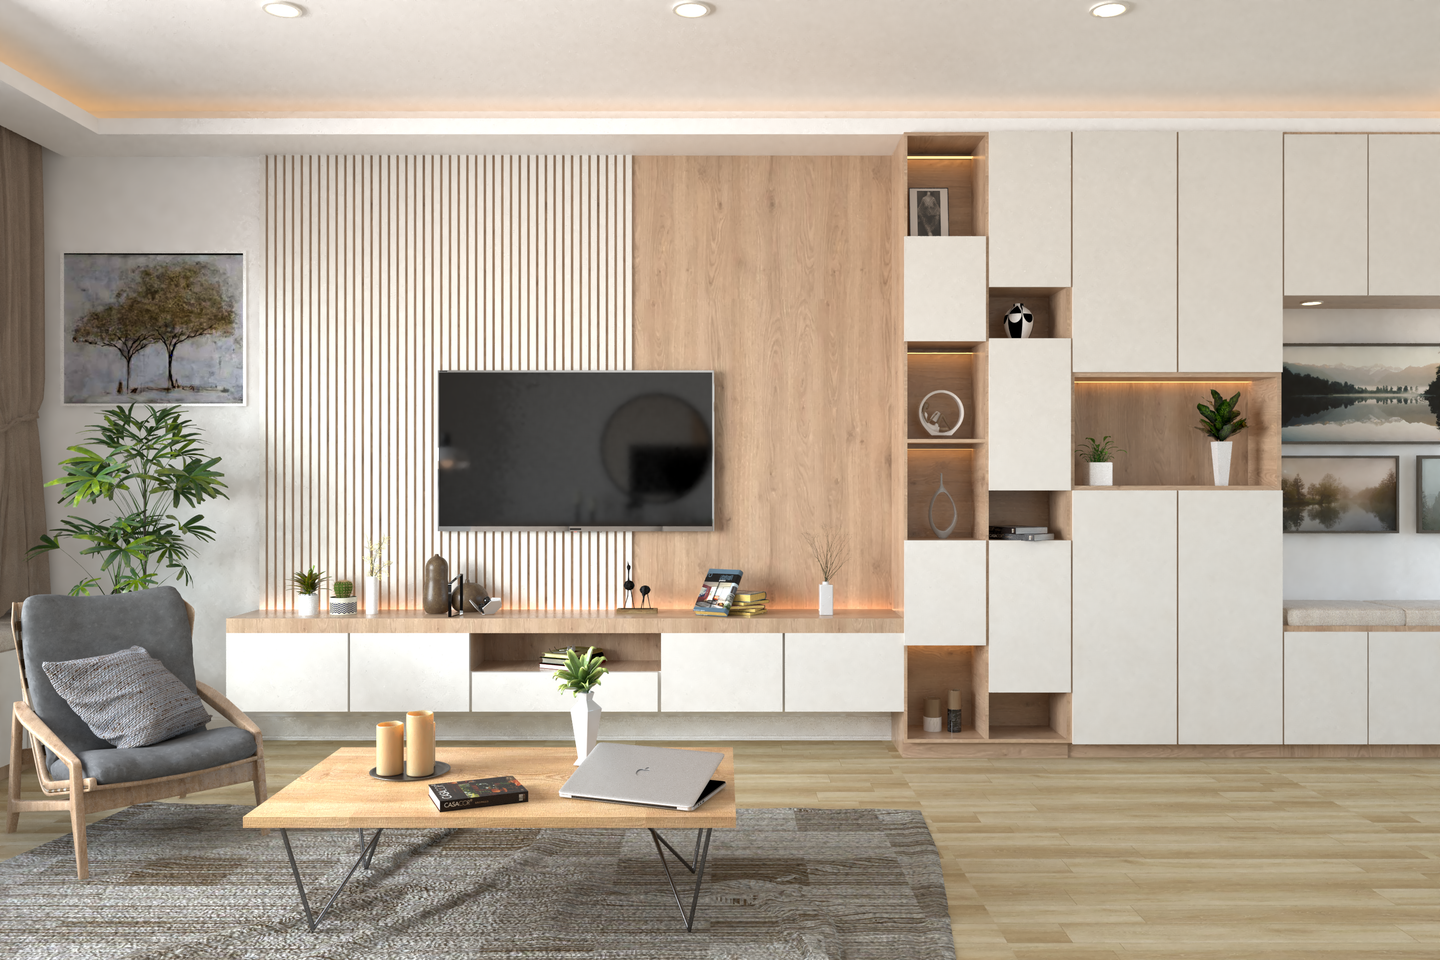 Scandinavian Living Room With an Open Floor Plan - Livspace